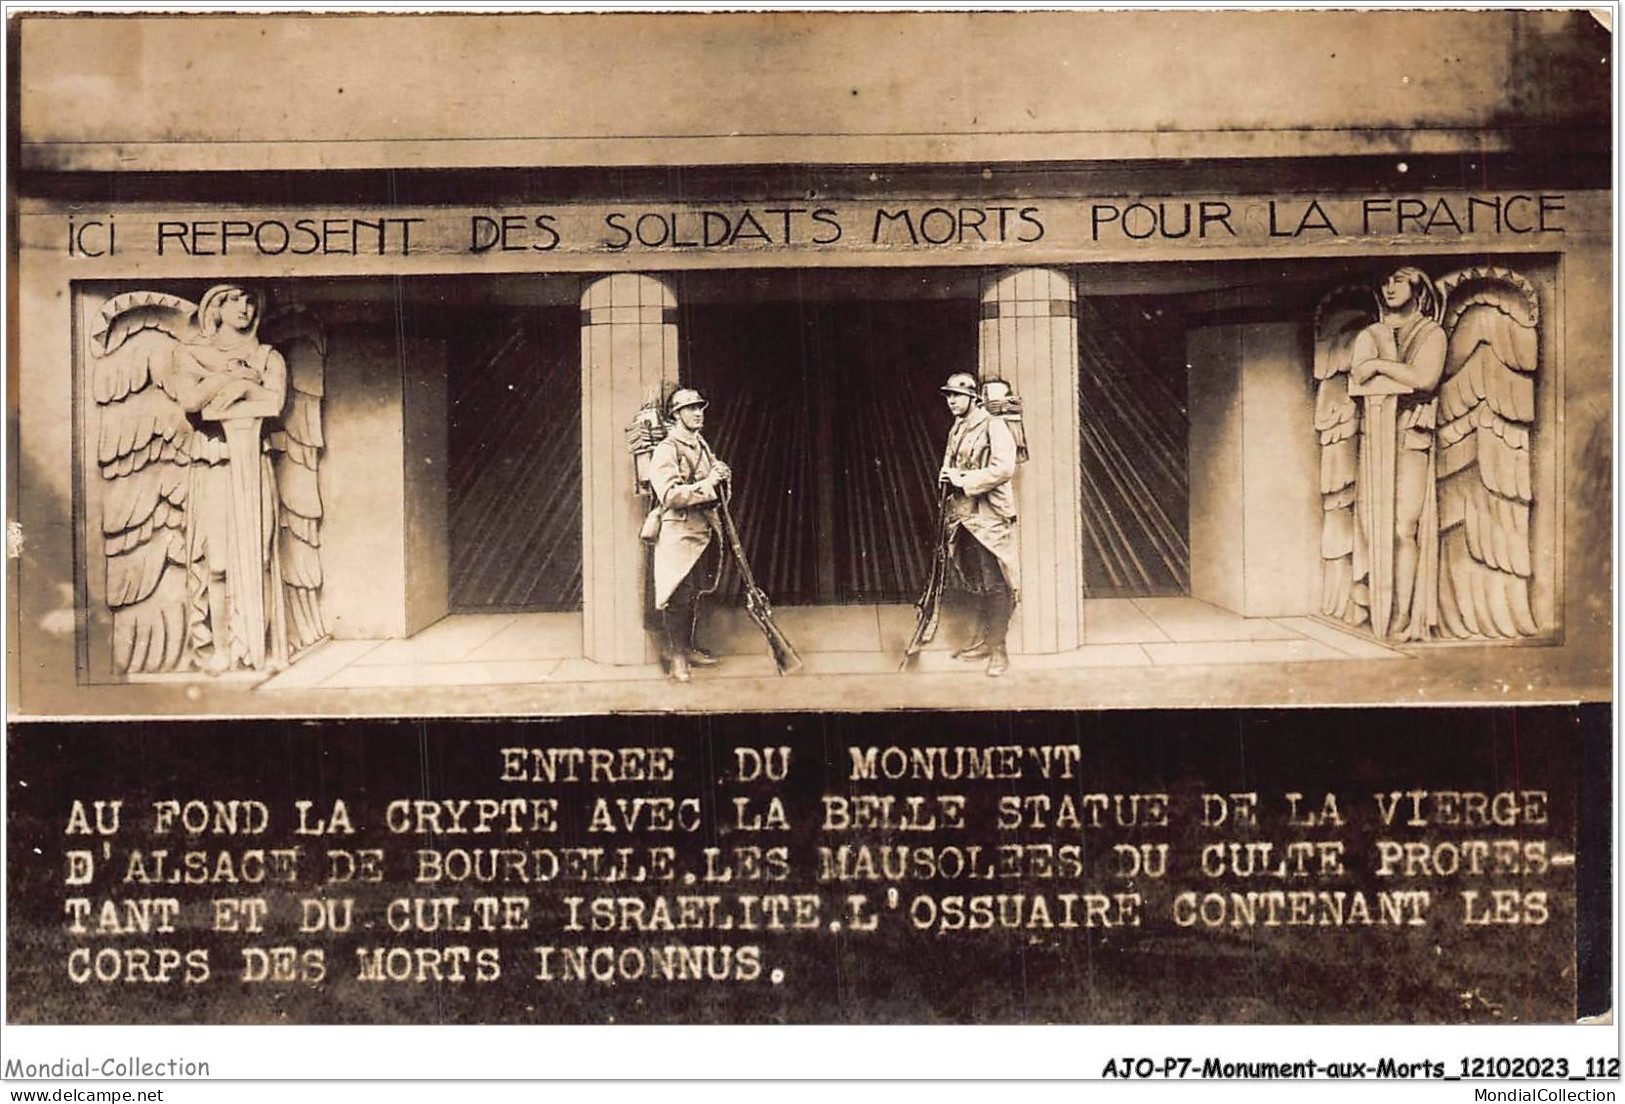 AJOP7-0704 - MONUMENT-AUX-MORTS - Ici Reposent Des Soldats Morts Pour La France -CULTE ISRAELITE JUDAICA JUIF RELIGION - Monumenti Ai Caduti